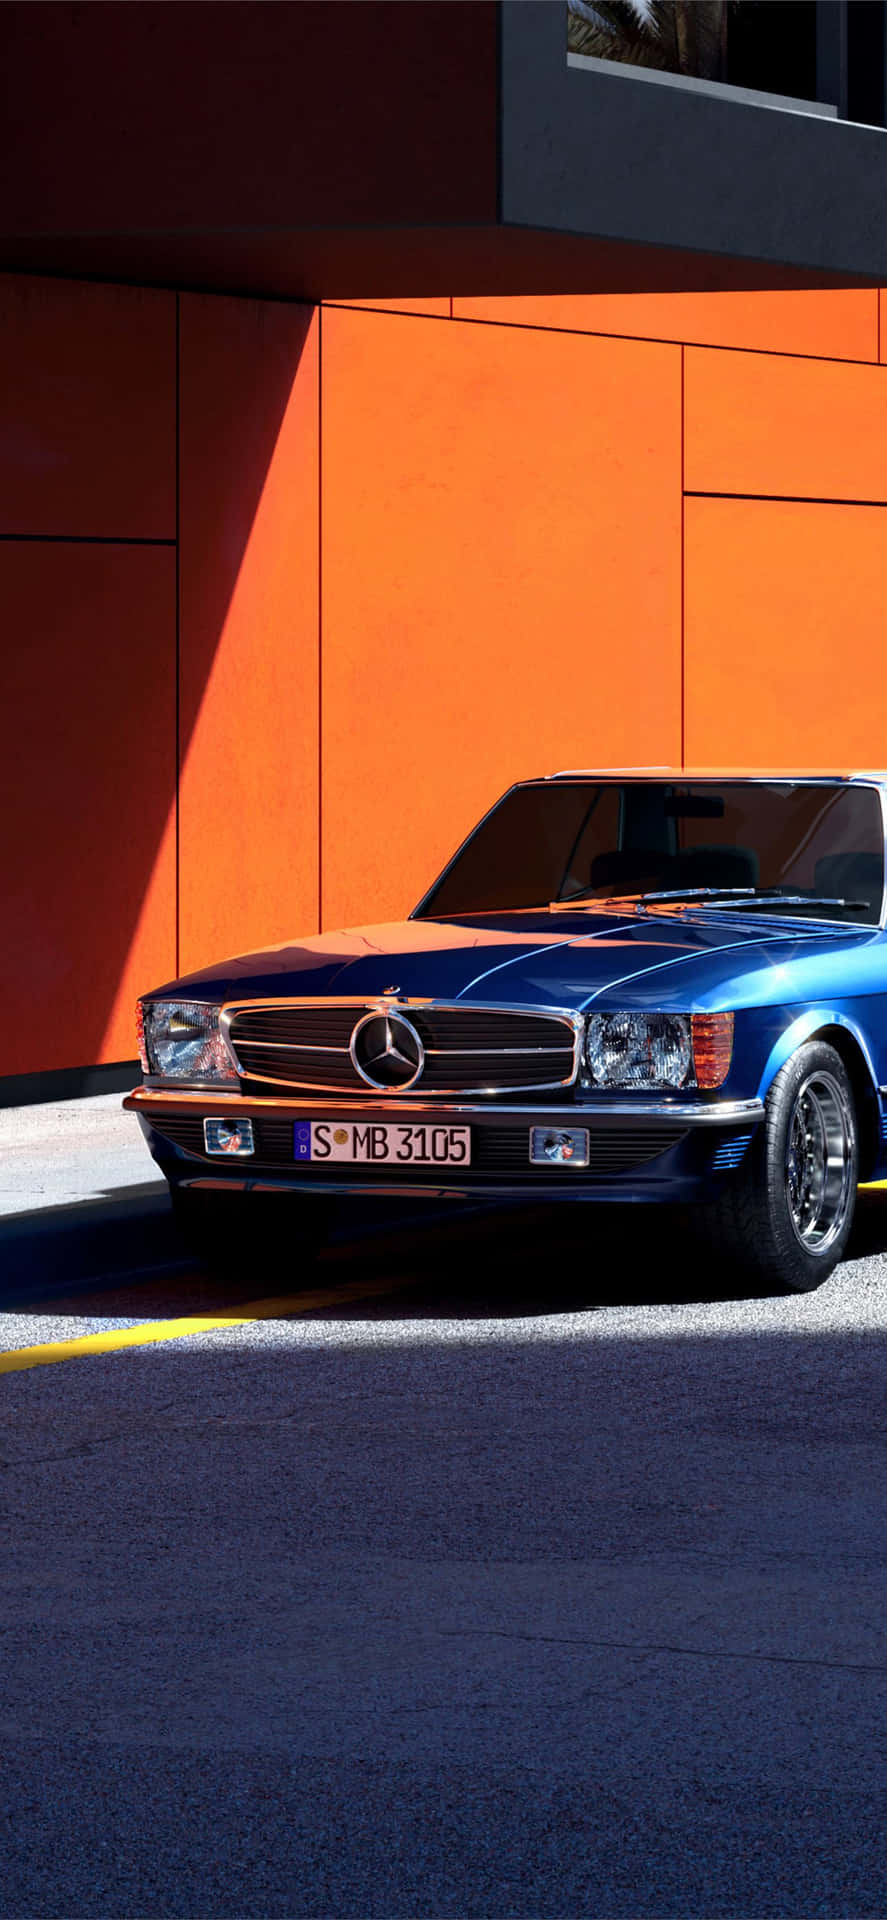 Blue Old Mercedes In Orange Background Wallpaper